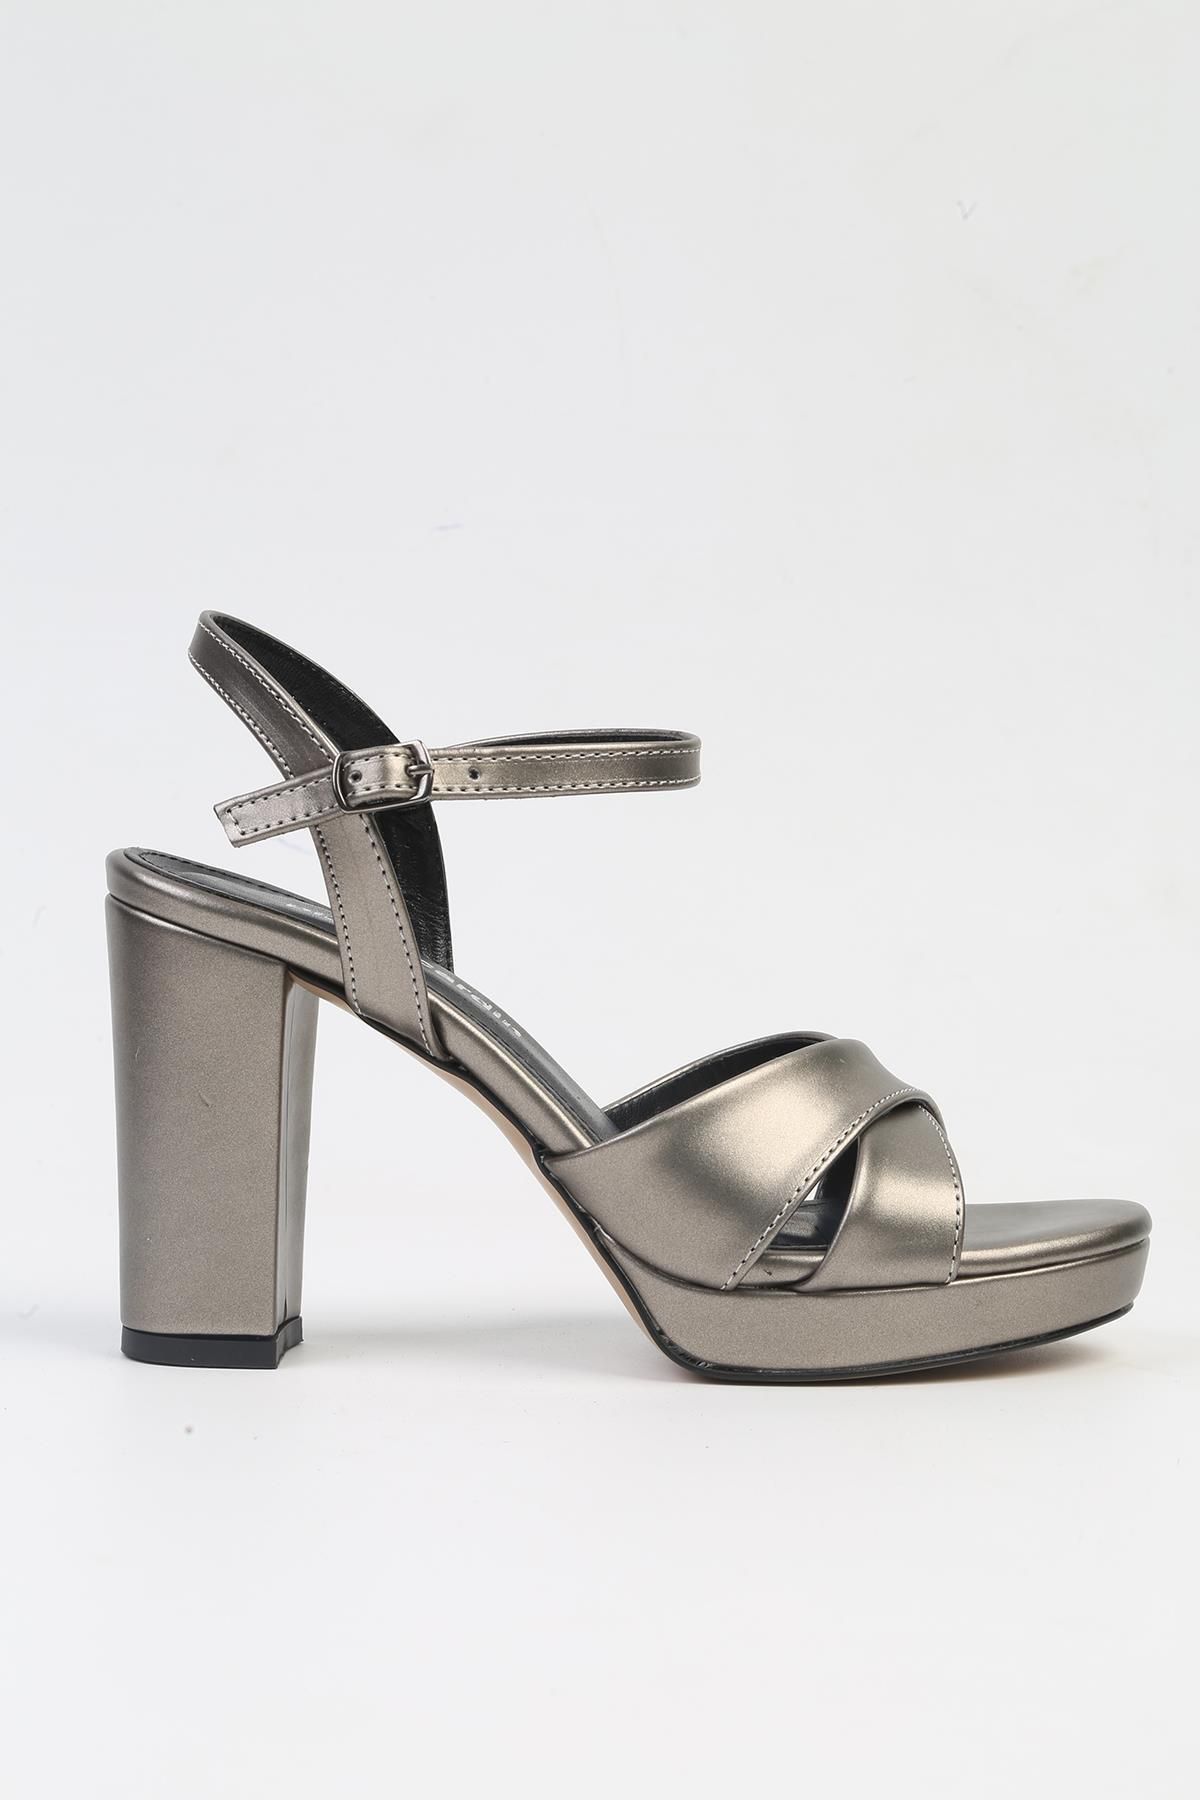 Pierre Cardin ® | PC-52371-3822 Platin Cilt-Kadın Topuklu Ayakkabı